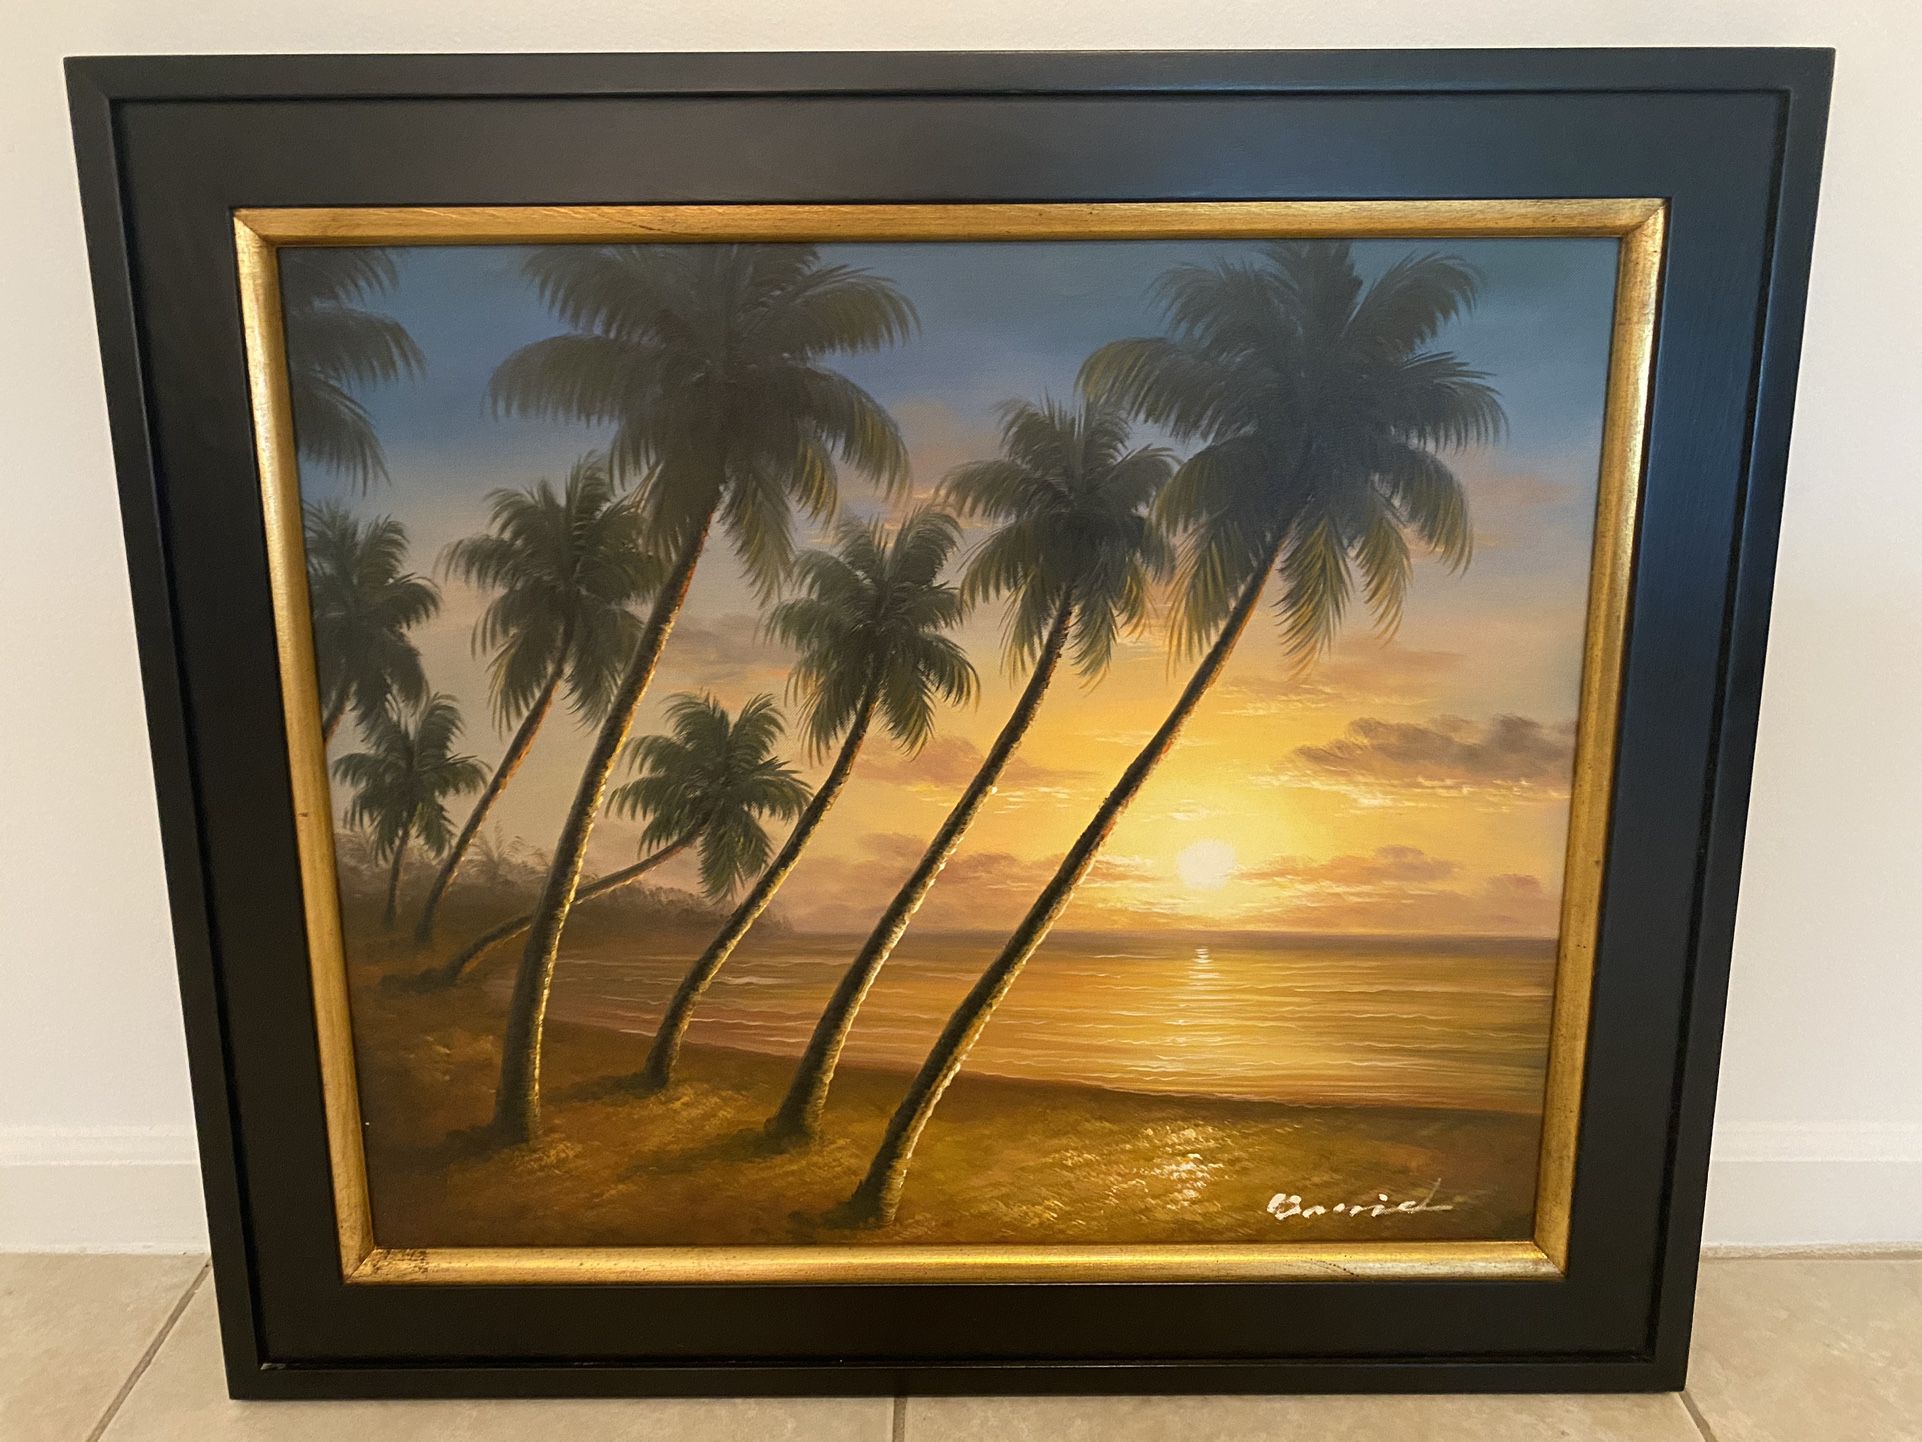 Beach Palm Trees Wall Art